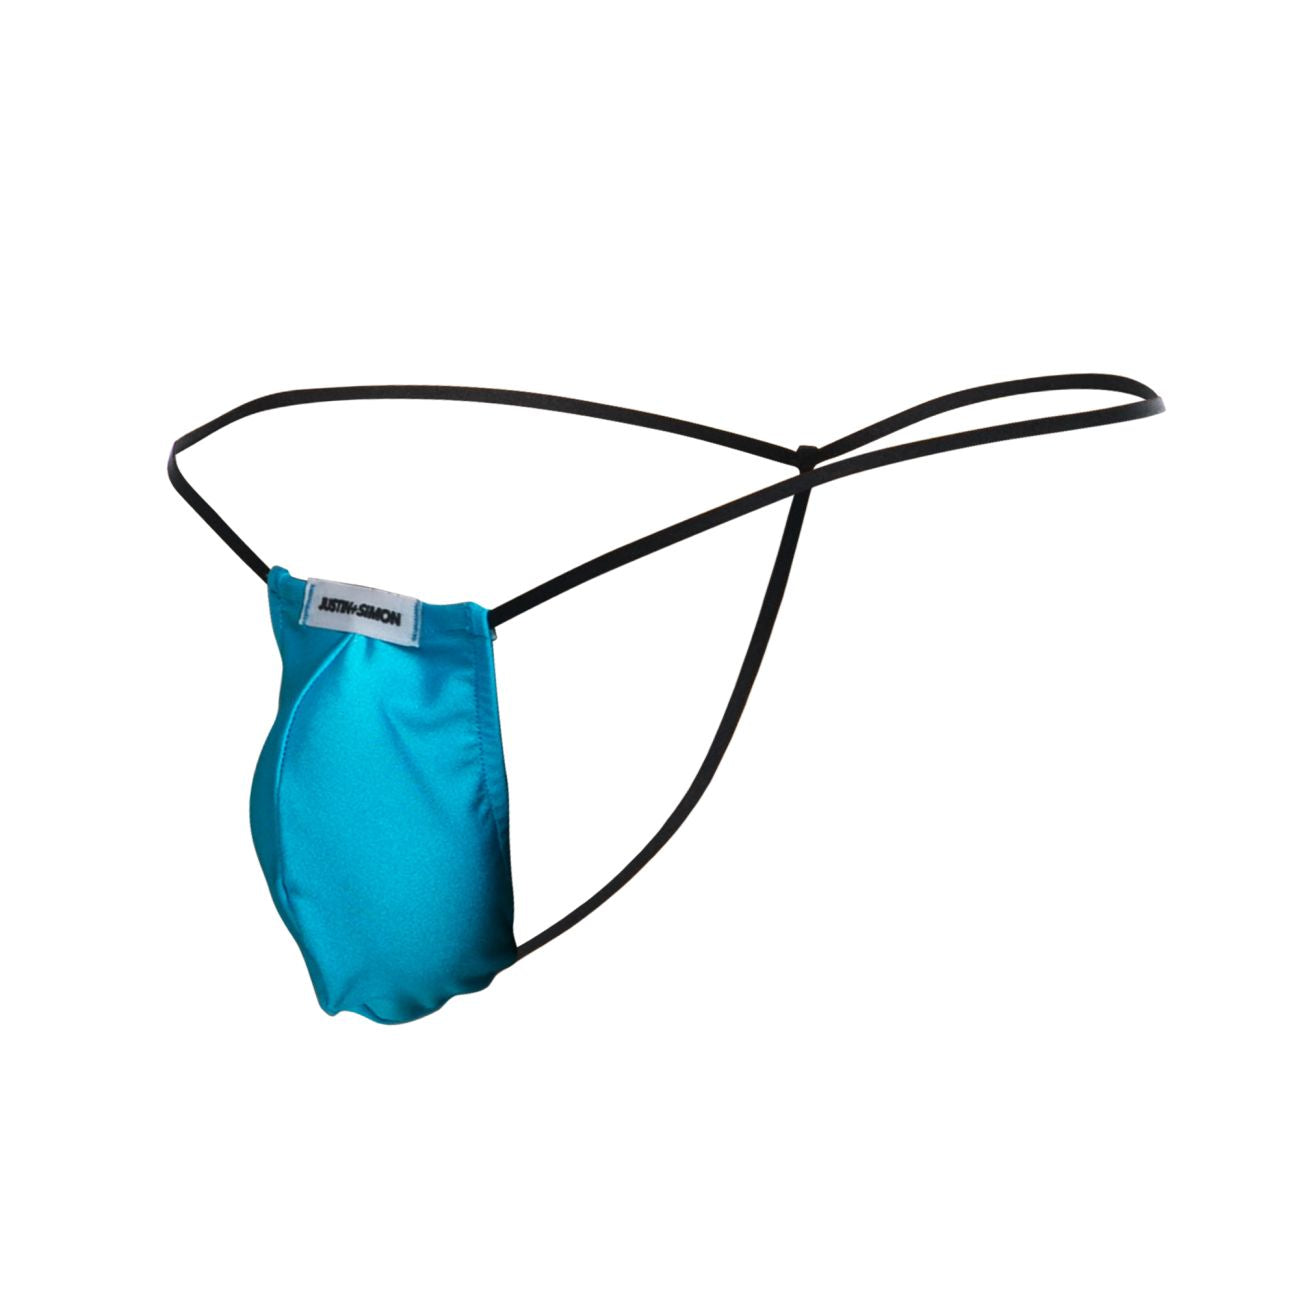 JUSTIN+SIMON XSJ02 Silky G-String Bulge Turquoise